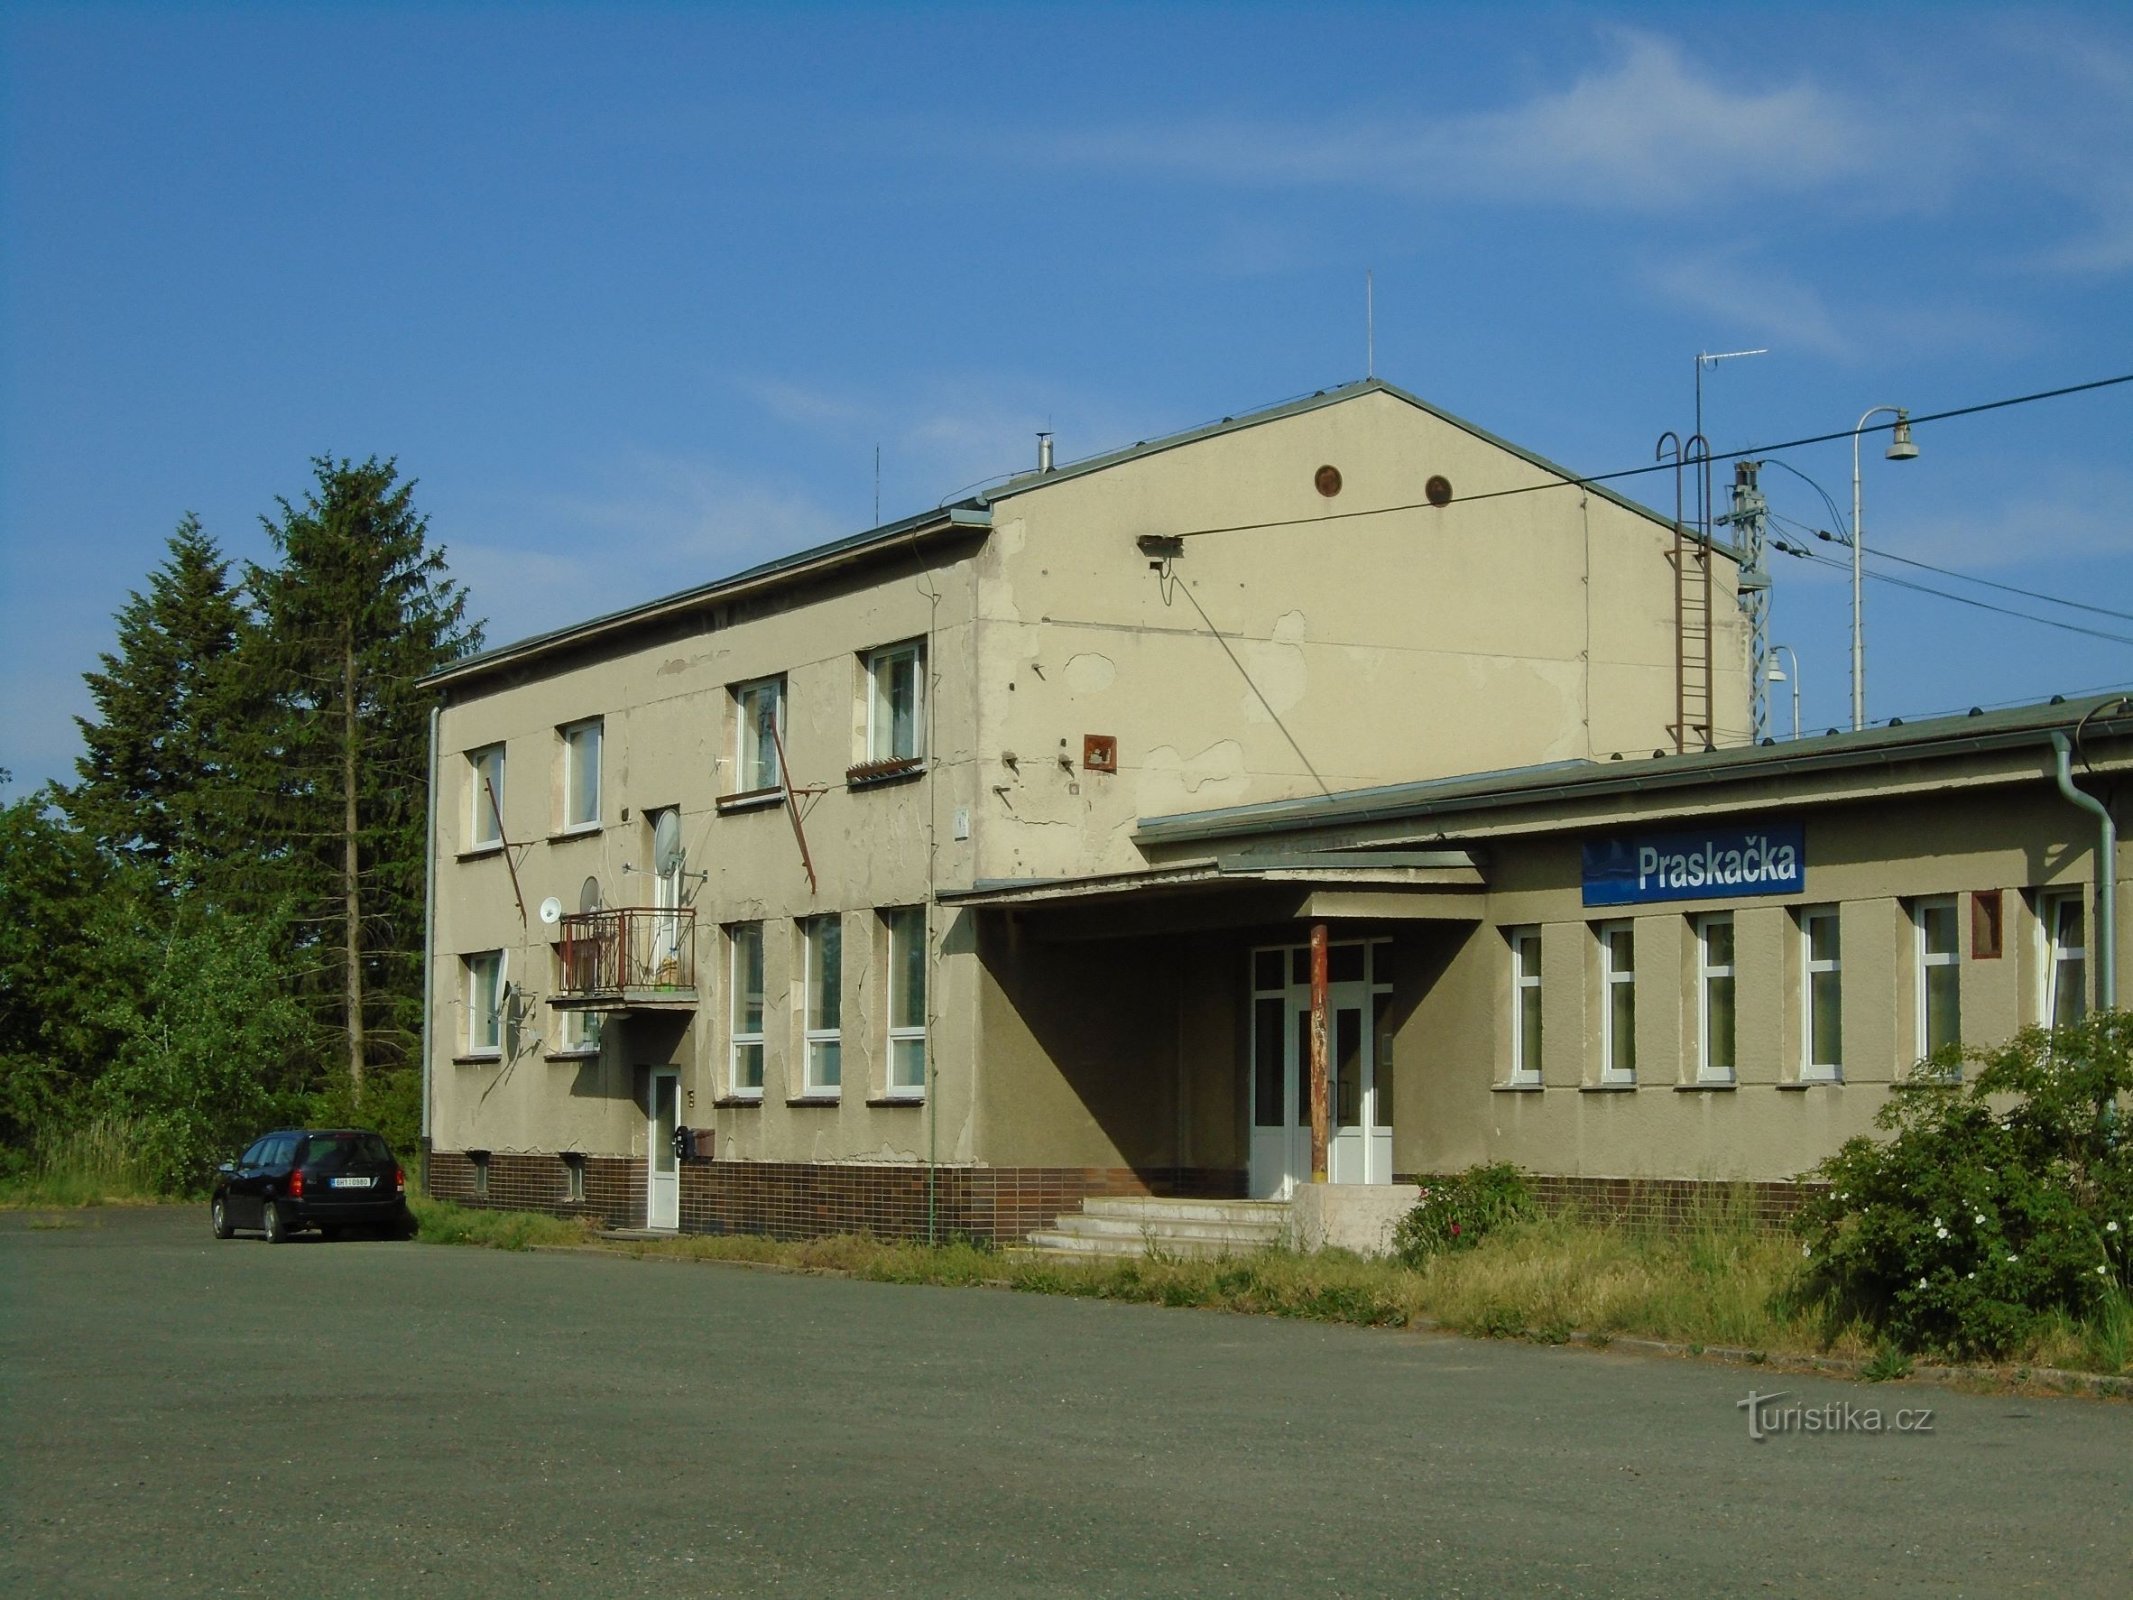 Station (Praskačka, 15.5.2018/XNUMX/XNUMX)